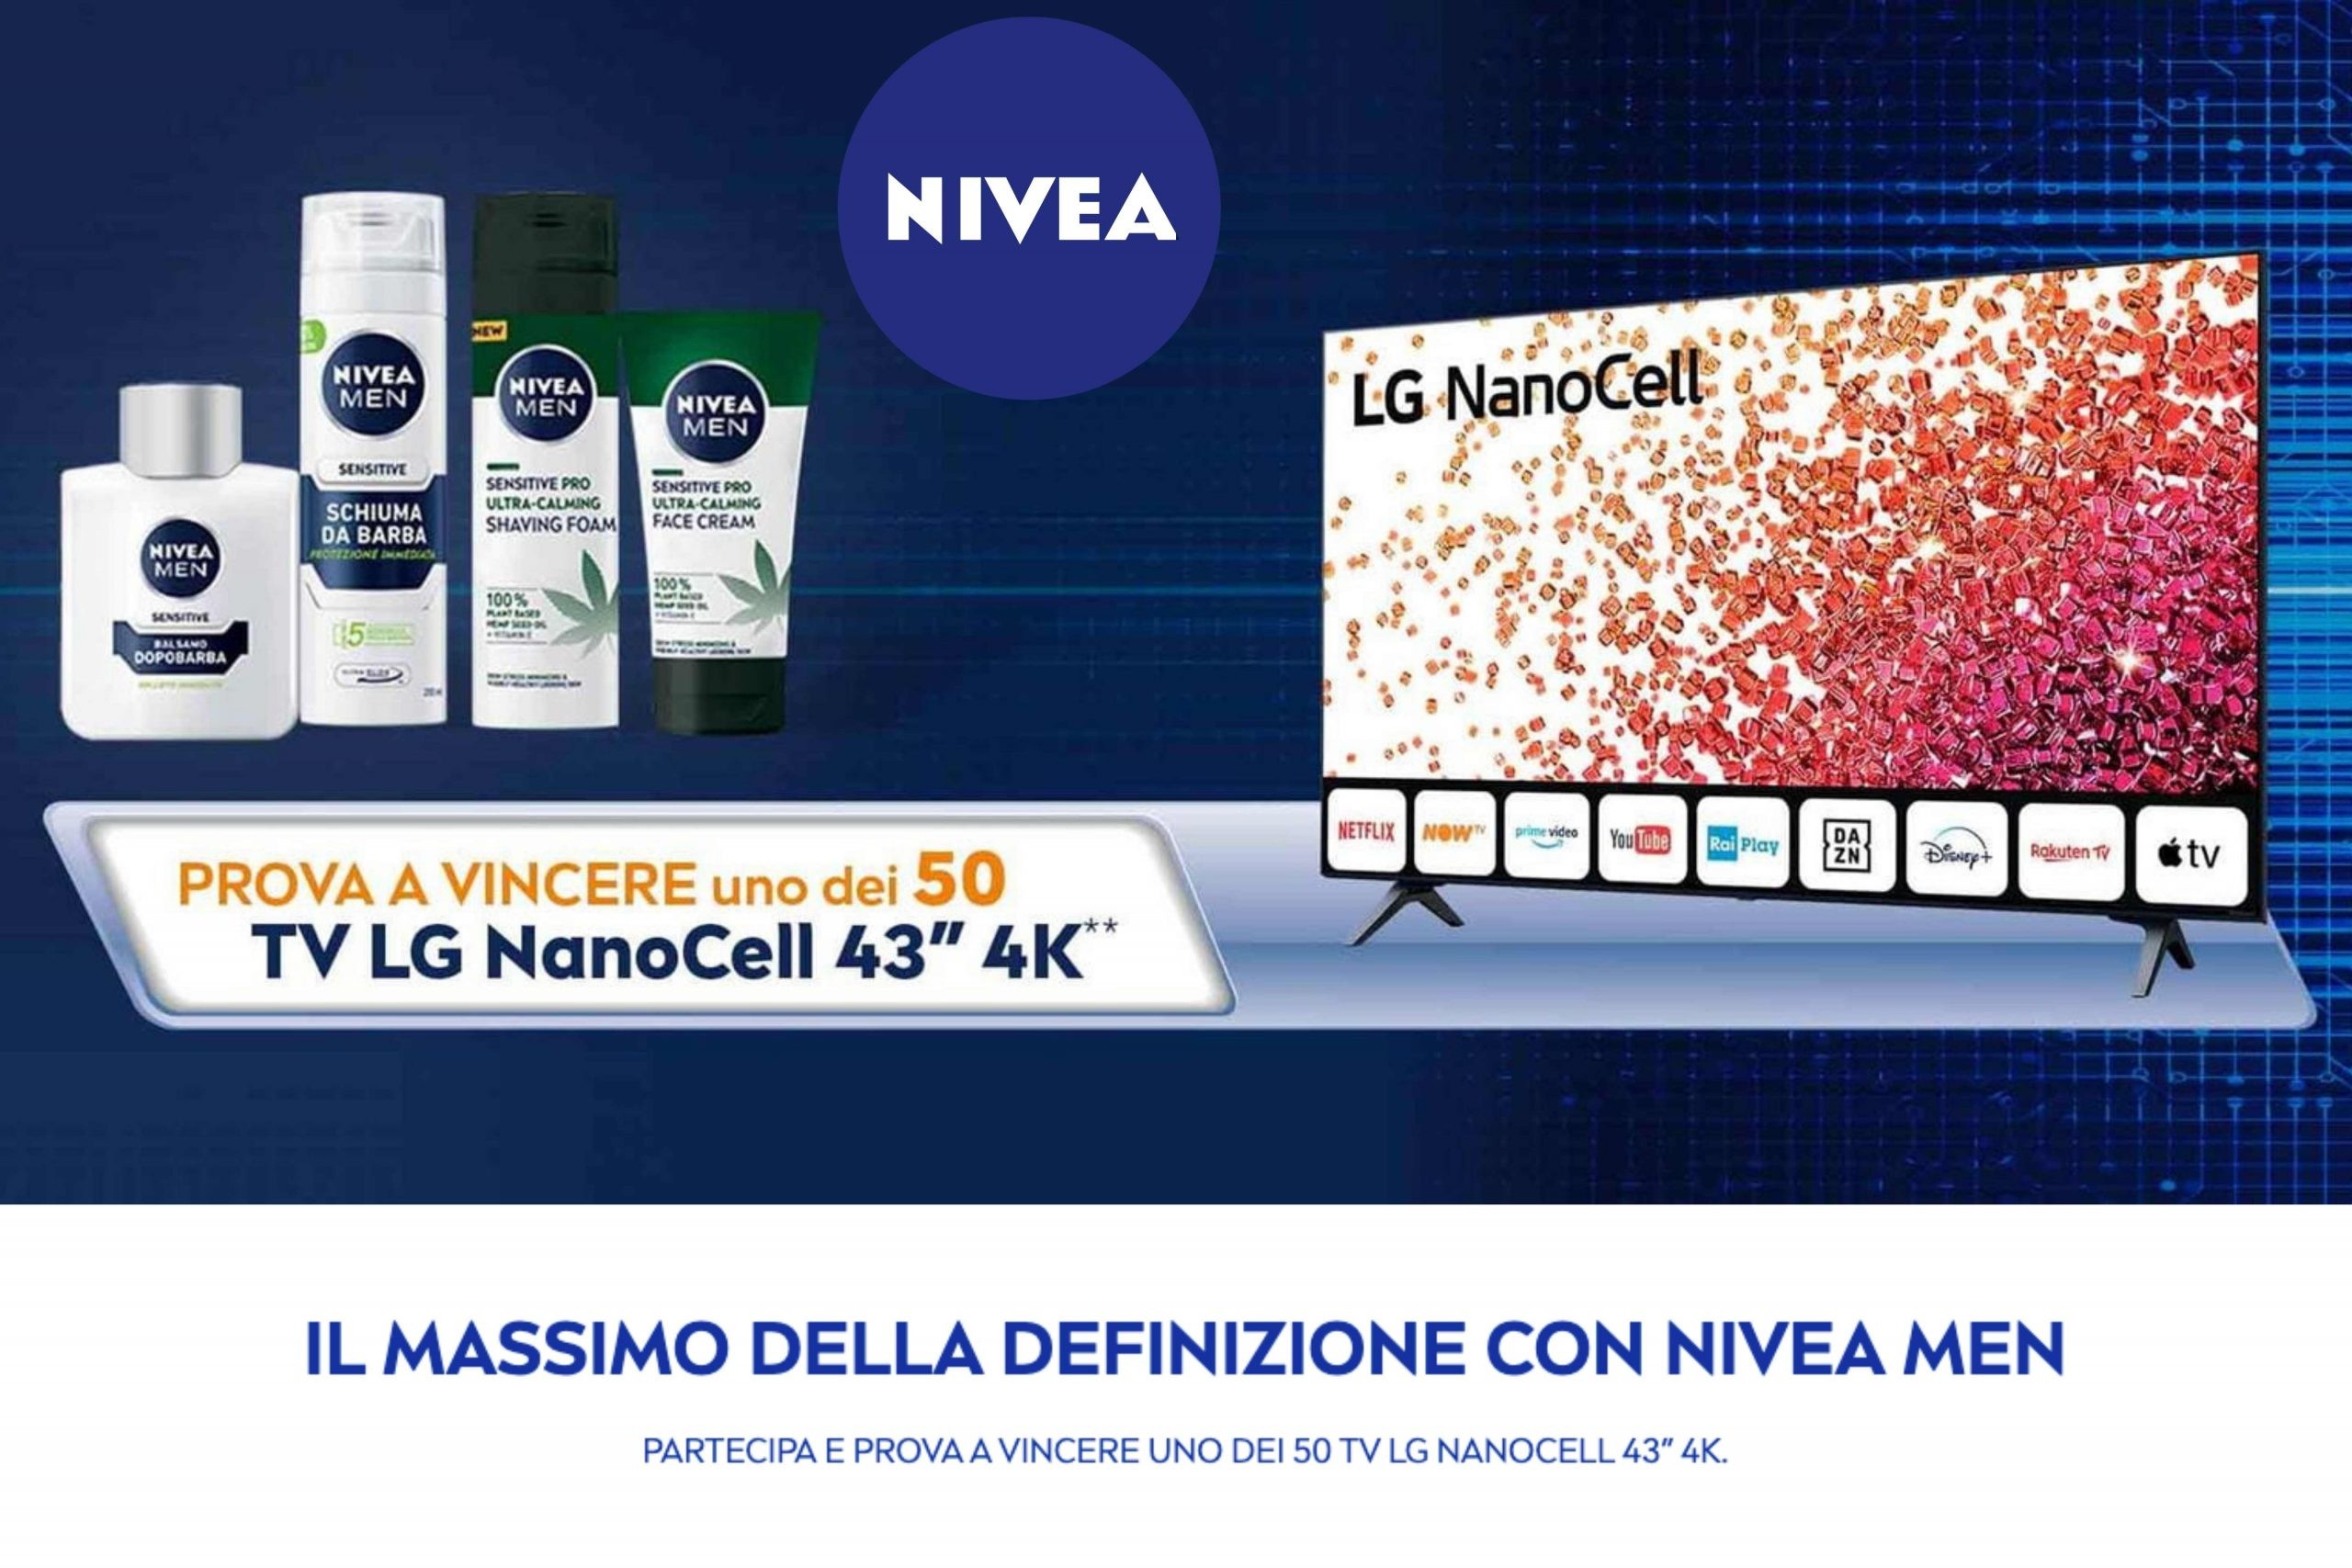 Concorso “Il massimo della definizione con Nivea Man”: come vincere una TV LG NanoCell da 43 pollici 4K